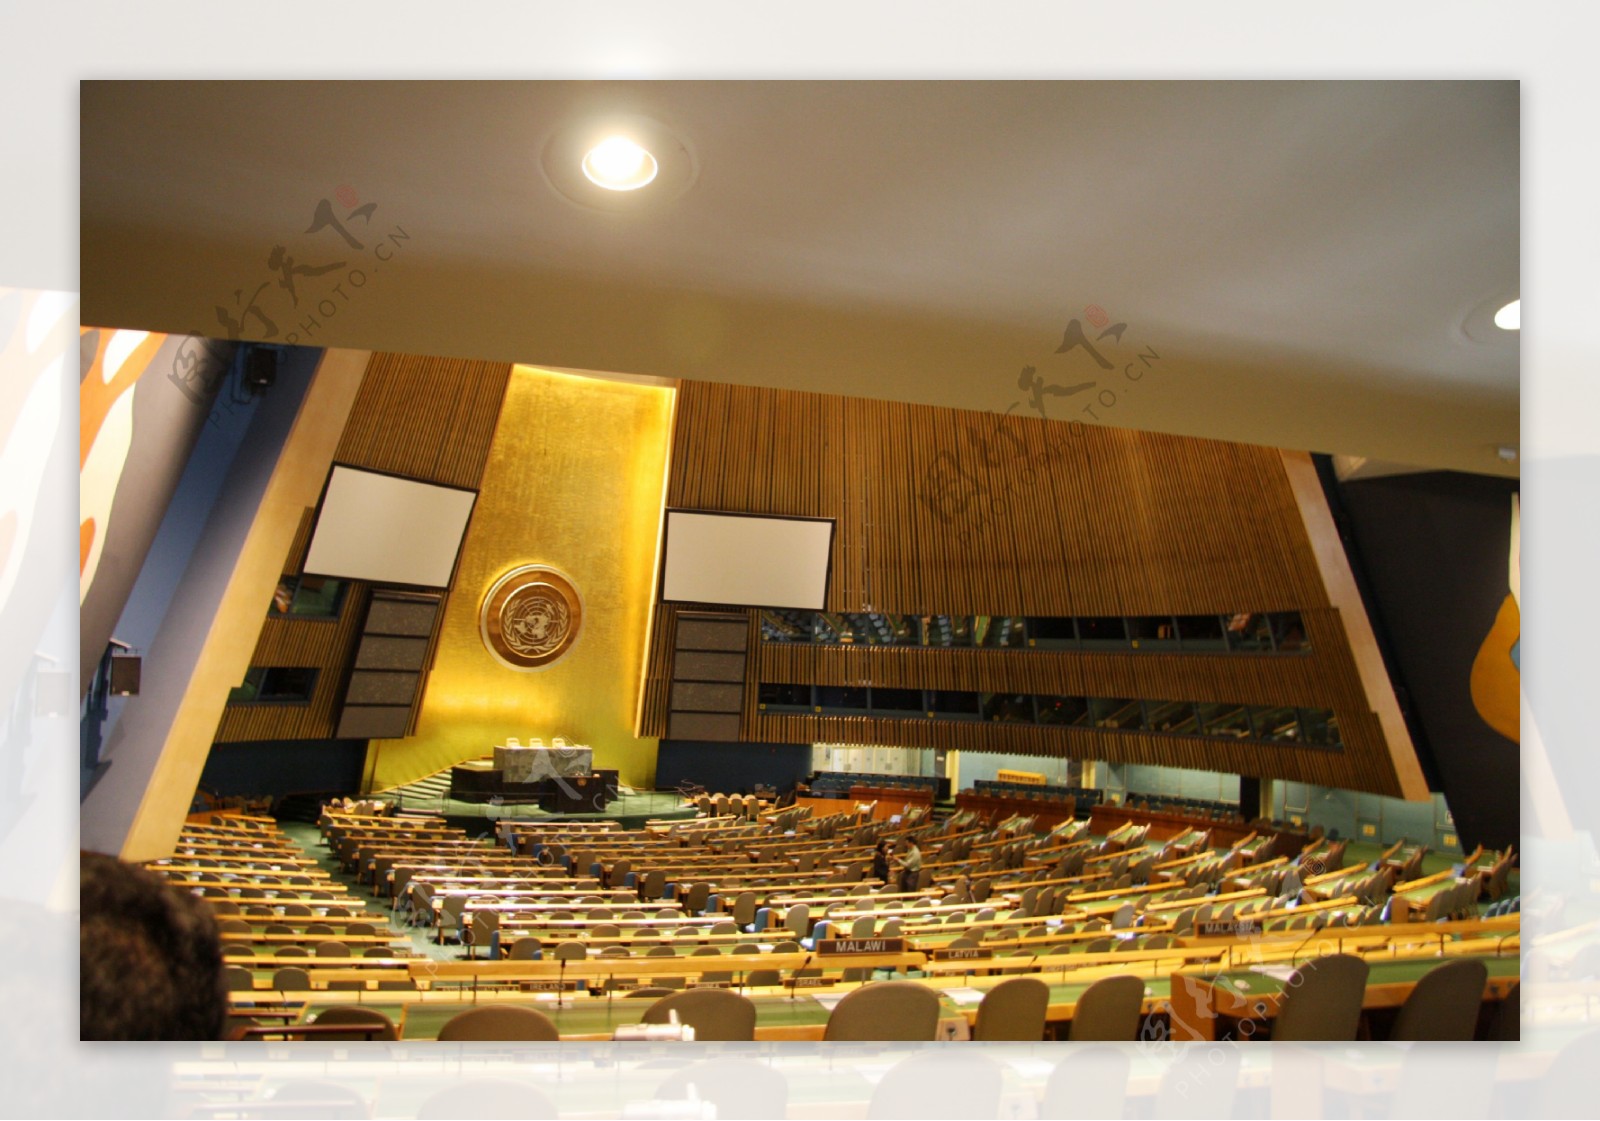 联合国大会会场图片